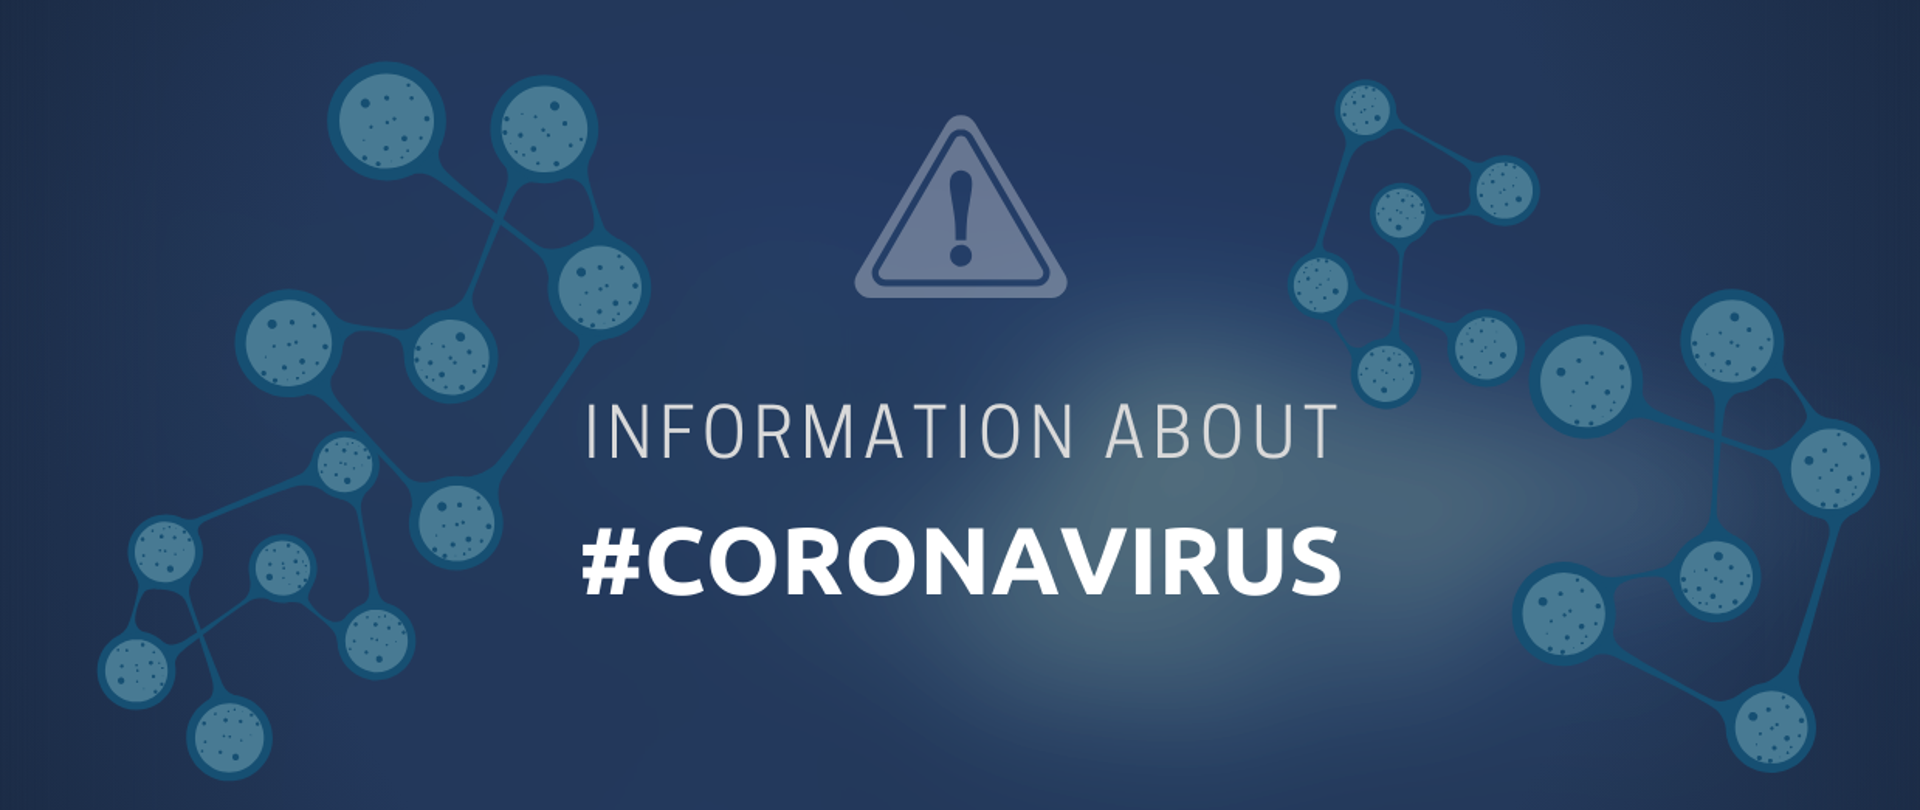 Info about coronavirus